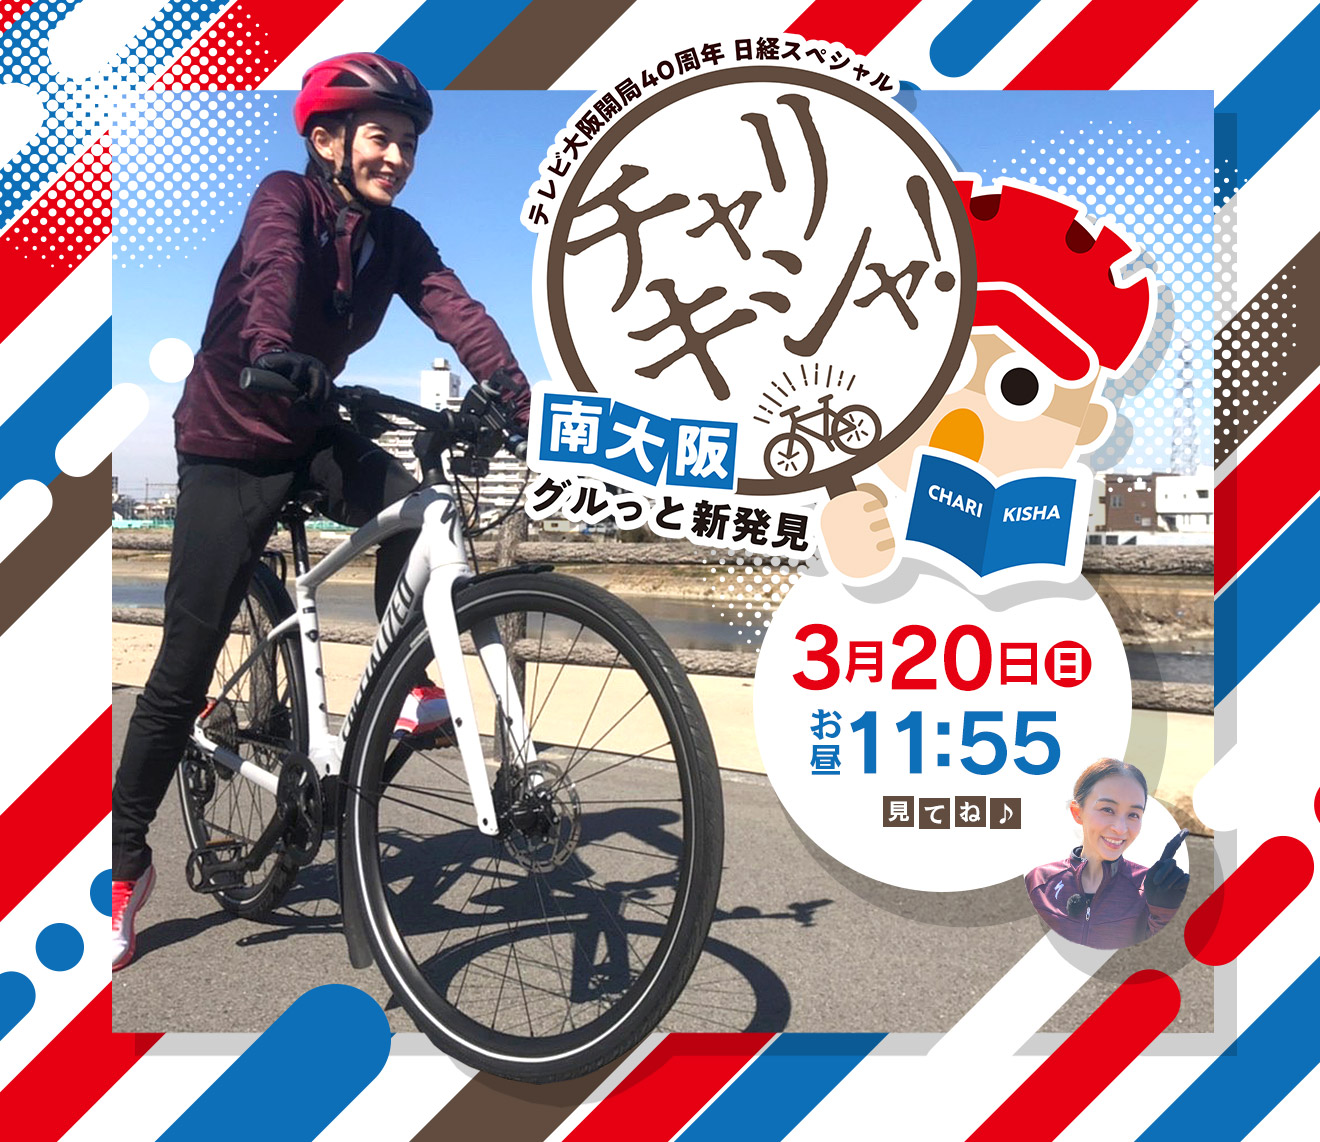 自転車で取材する記者「チャリキシャ」が、その土地で魅力ある「ヒト」「モノ」「コト」を徹底取材し、隠れた南大阪の魅力を余すことなく紹介します！